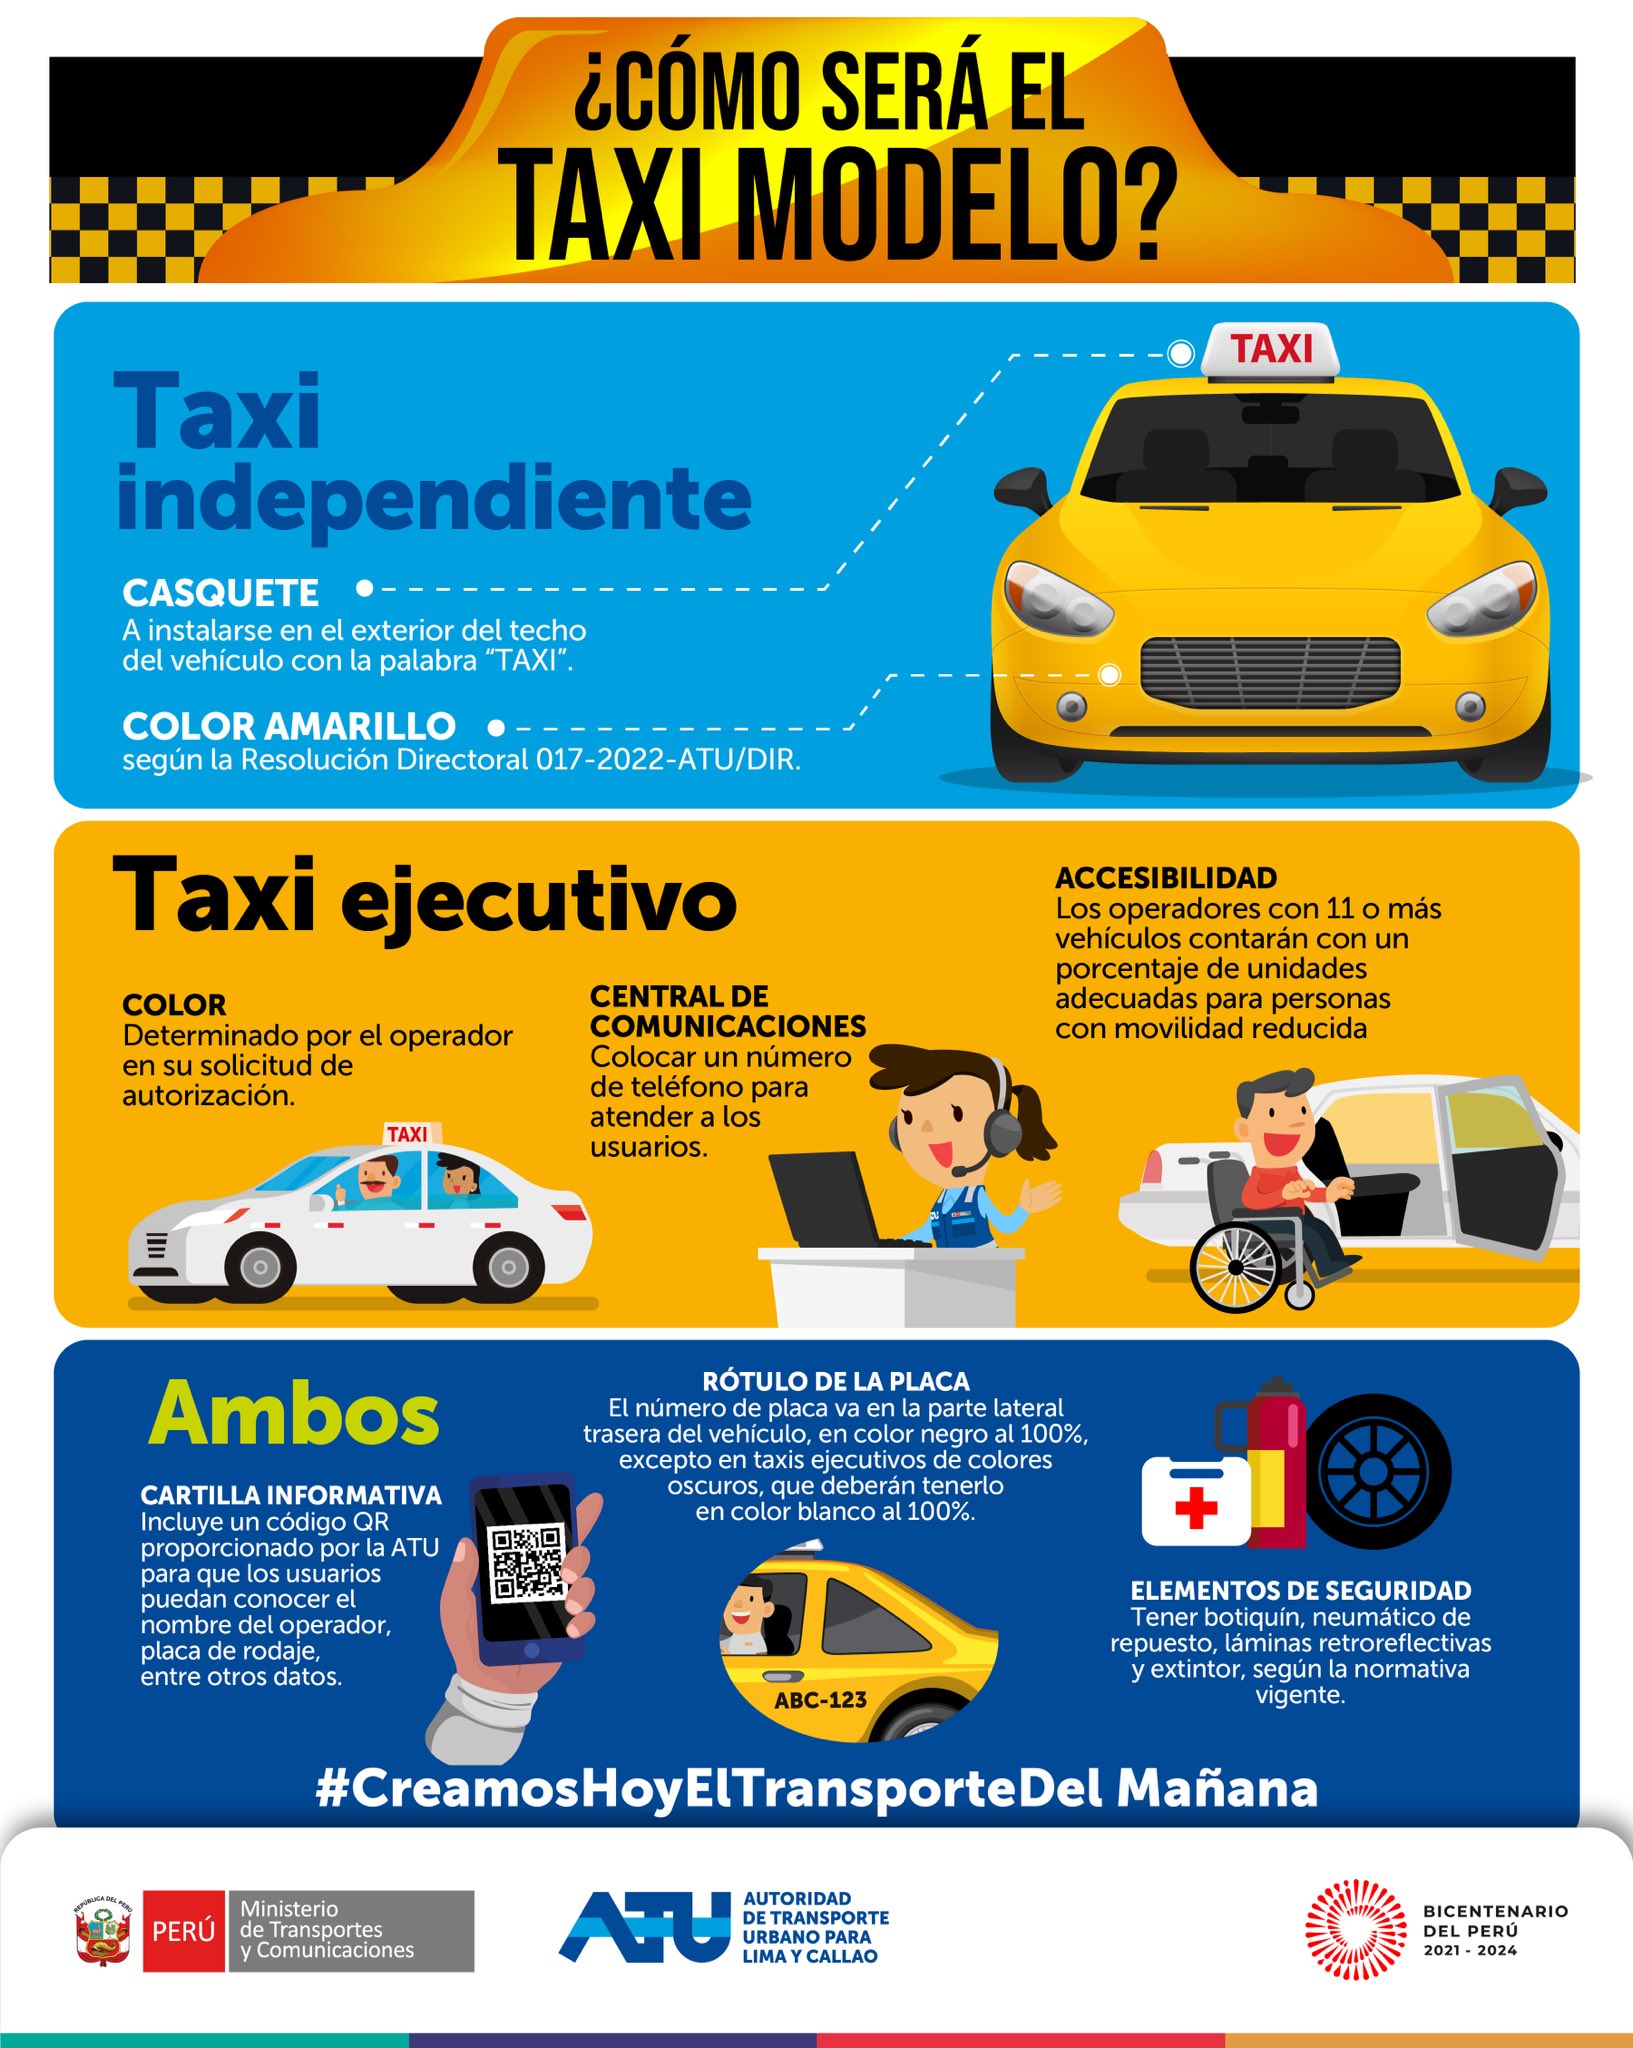 Conoce las características del “Taxi Modelo” que será exigido en Lima y  Callao - Infobae